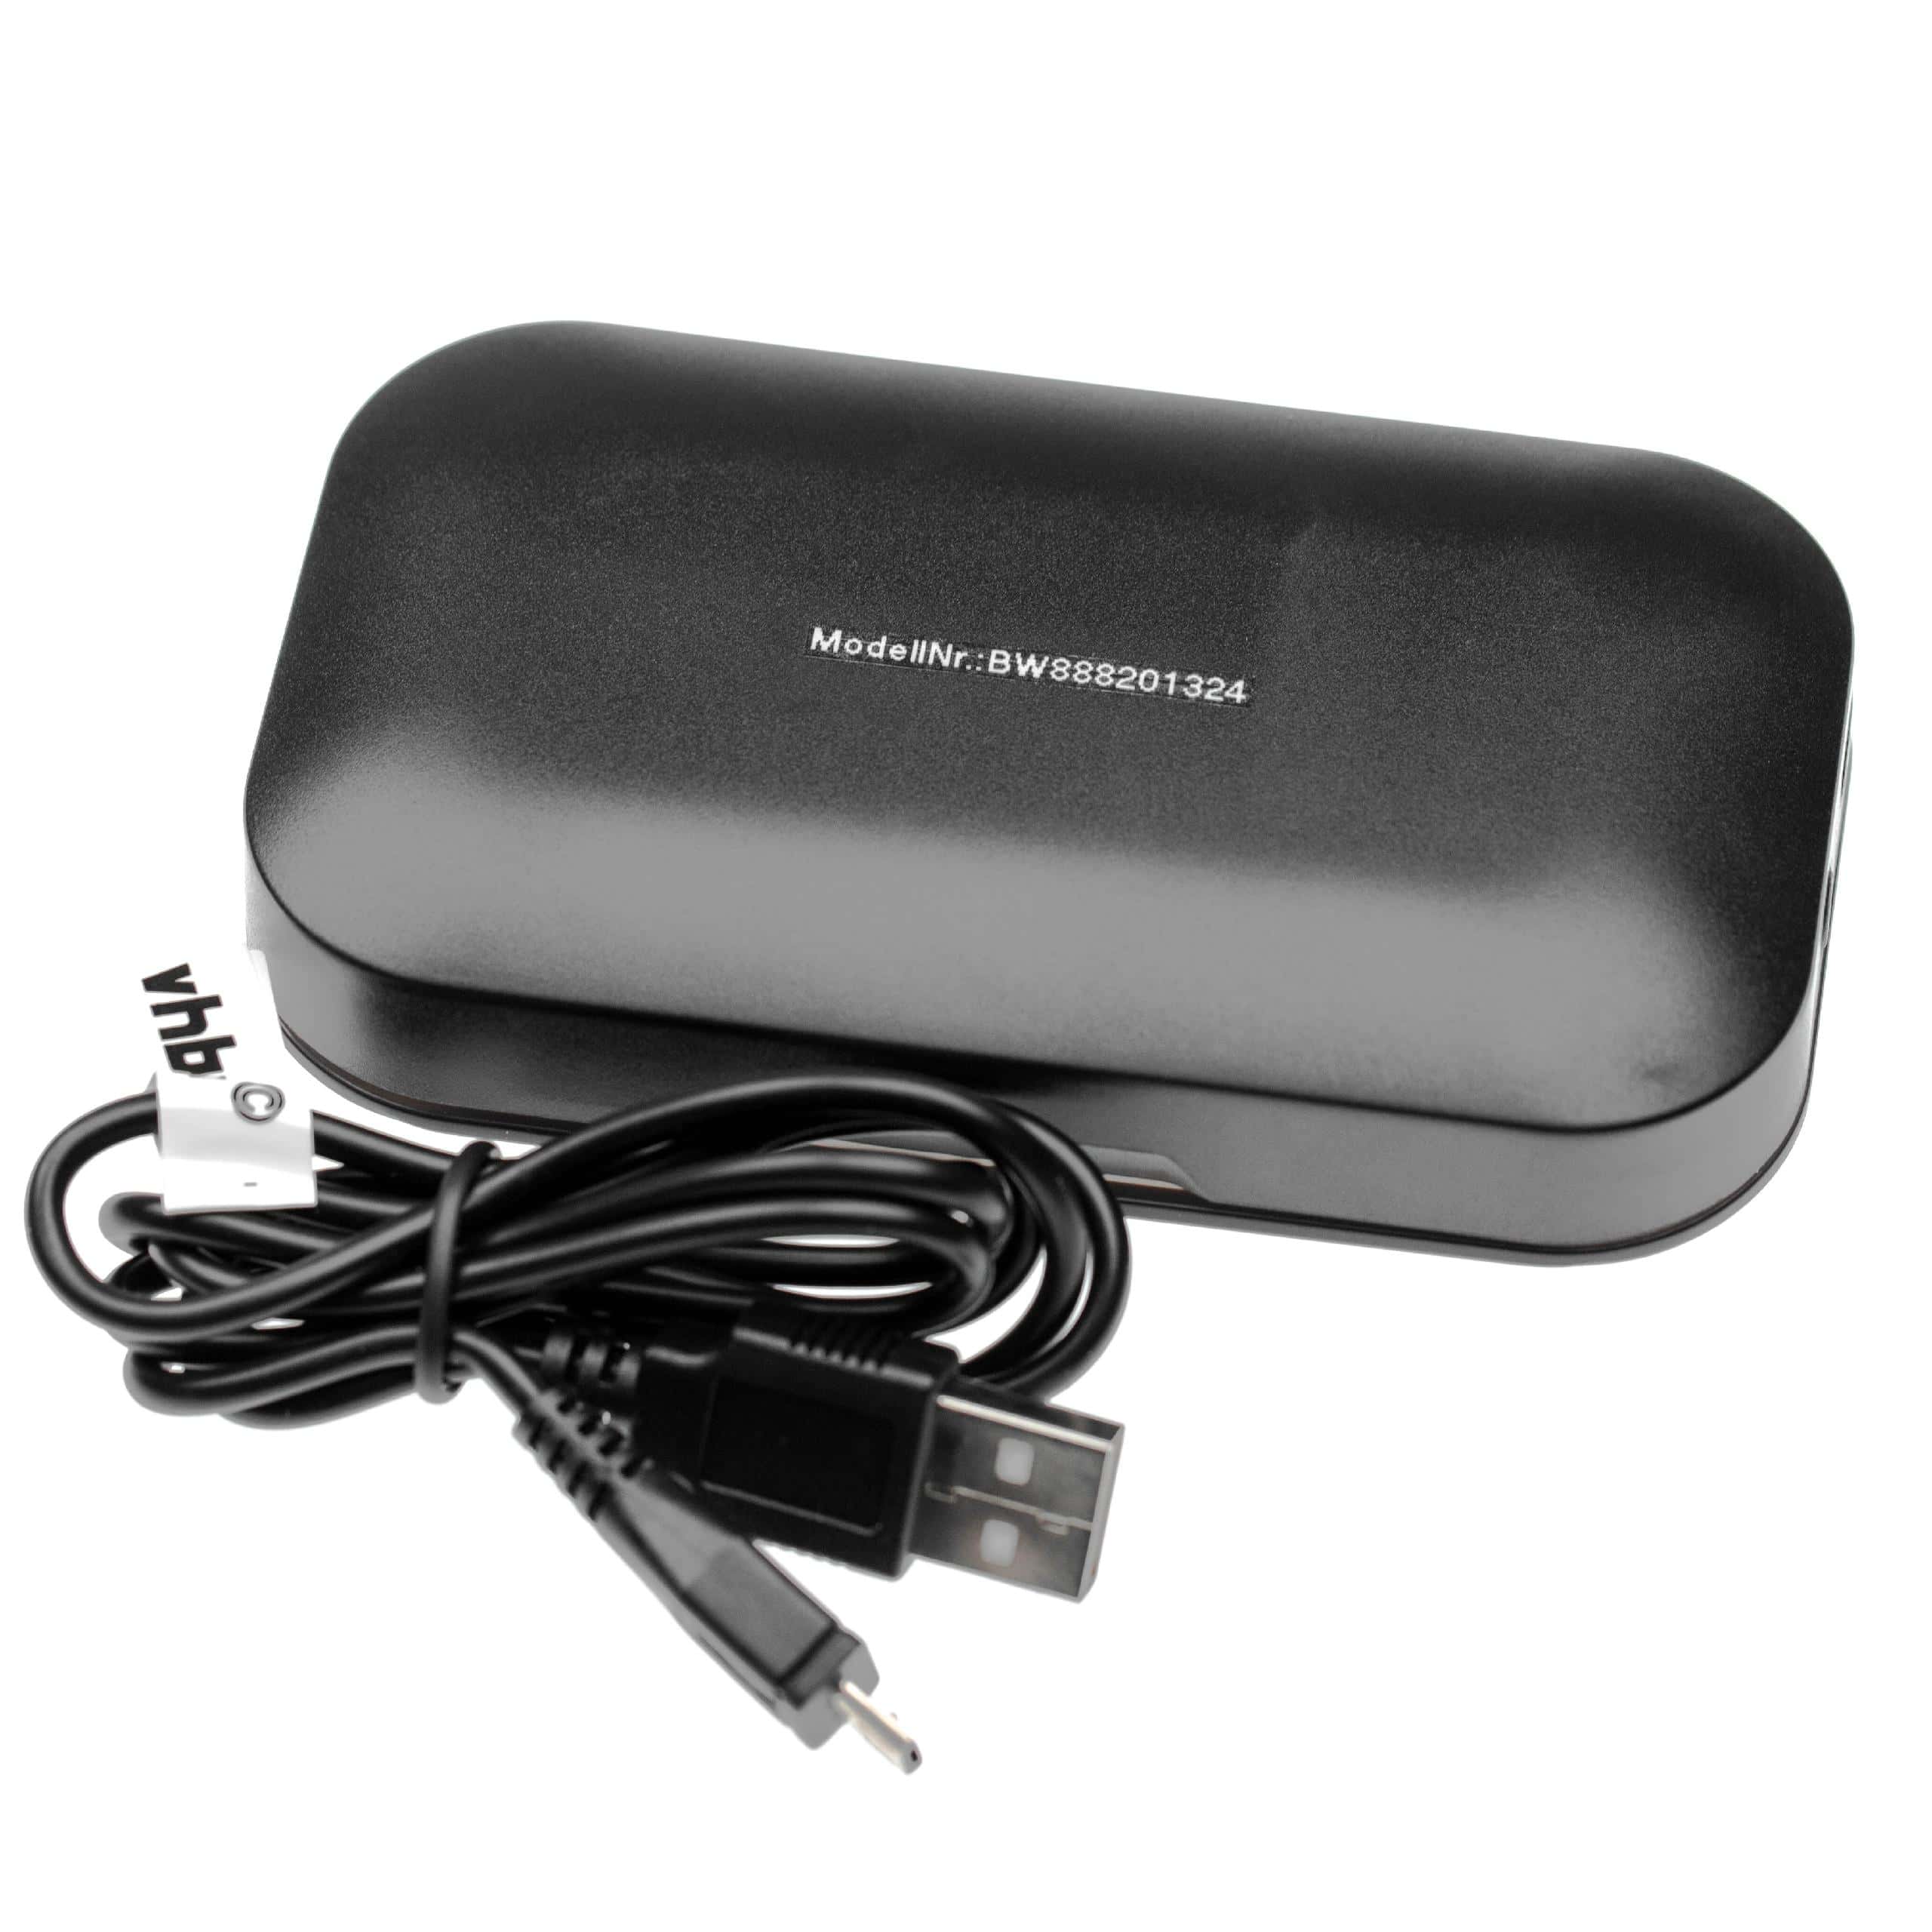 Boîtier de charge pour casque audio, oreillette, headset Plantronics Voyager Legend UC - câble USB inclus